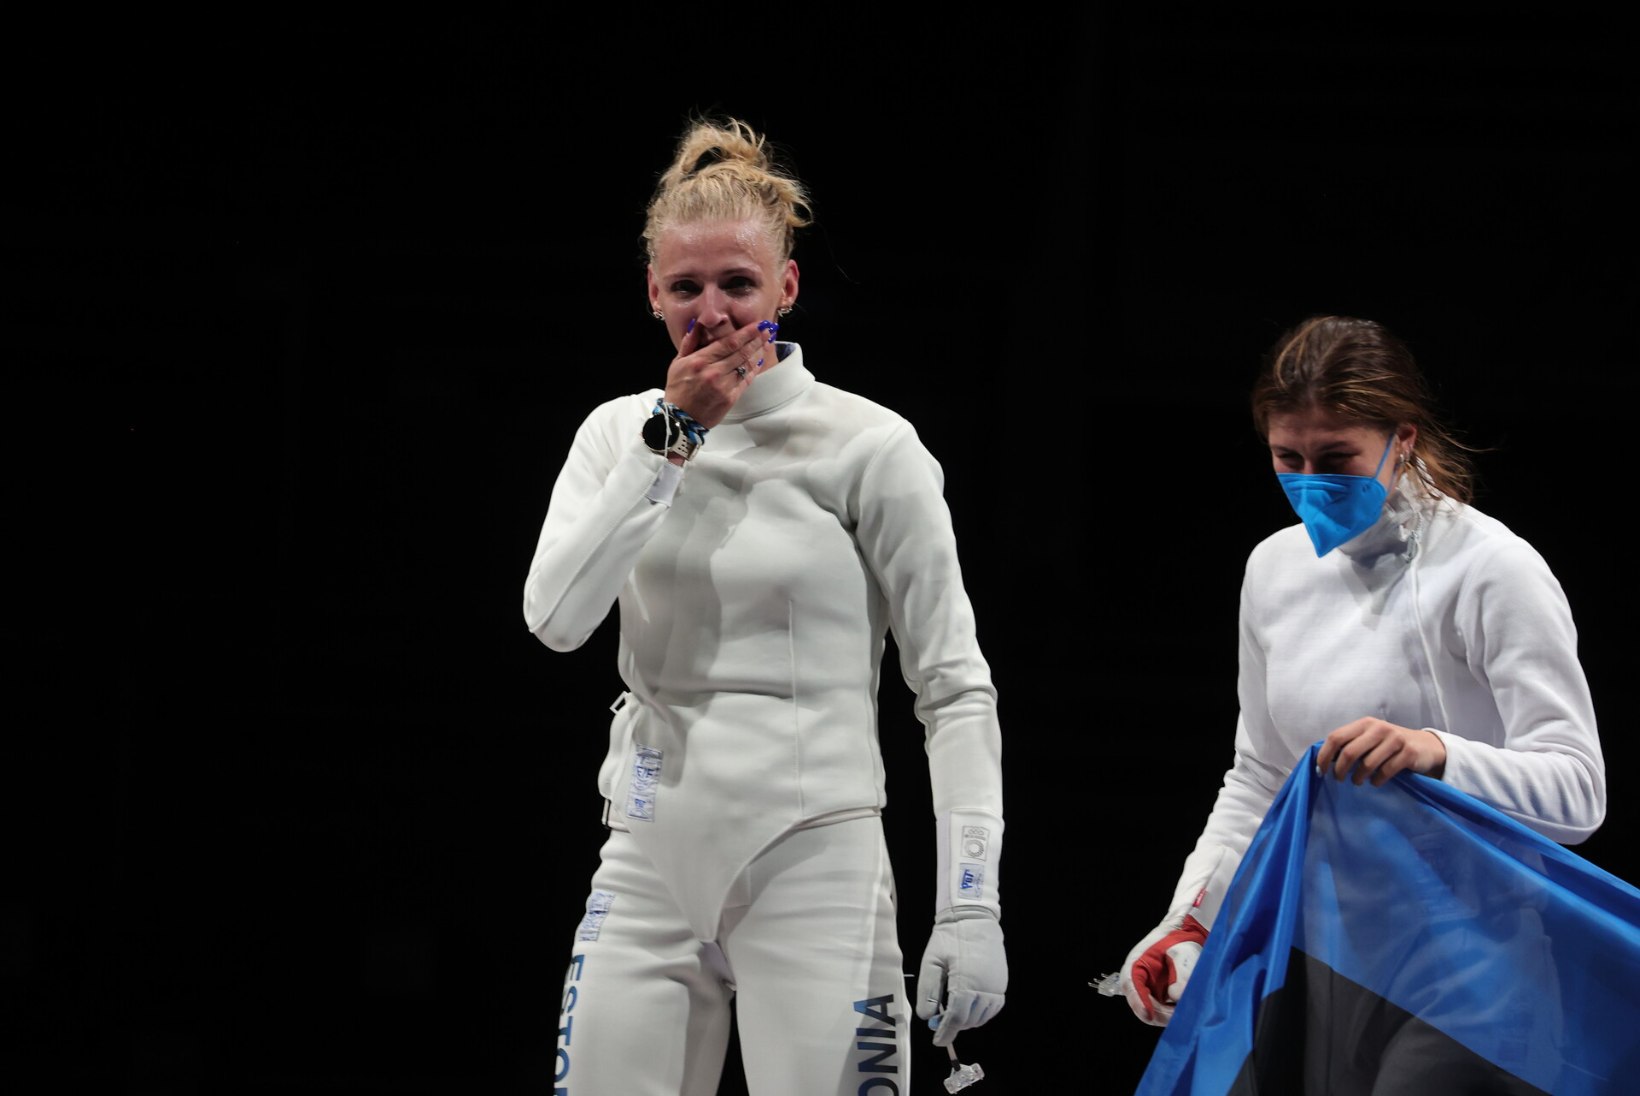 ÕL TOKYOS | VÕRRATULT VAPUSTAVAD VEHKLEJAD! Eesti sai juurde neli olümpiavõitjat!